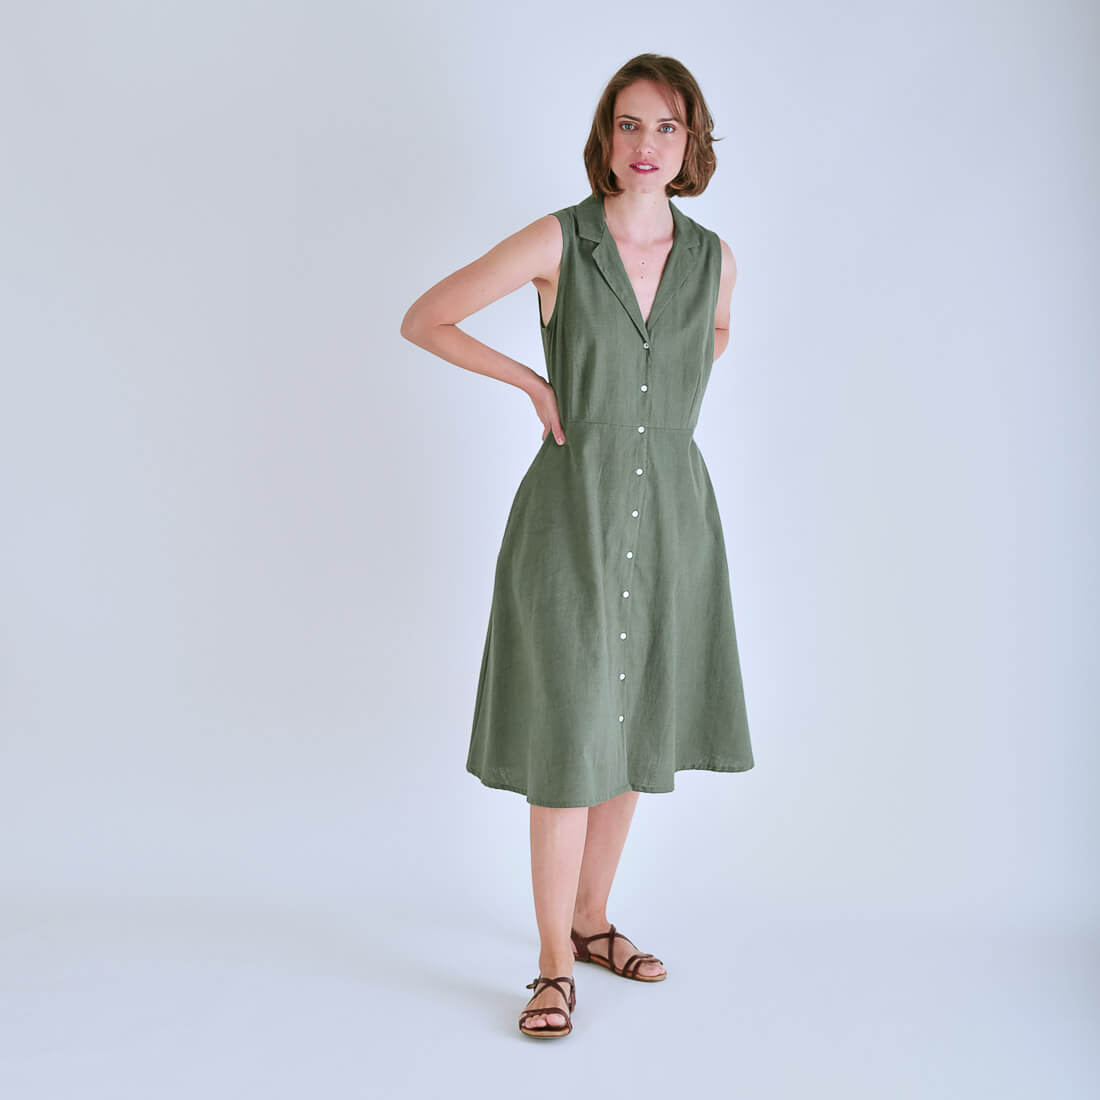 Aubrey Sleeveless Linen Shirt Dress